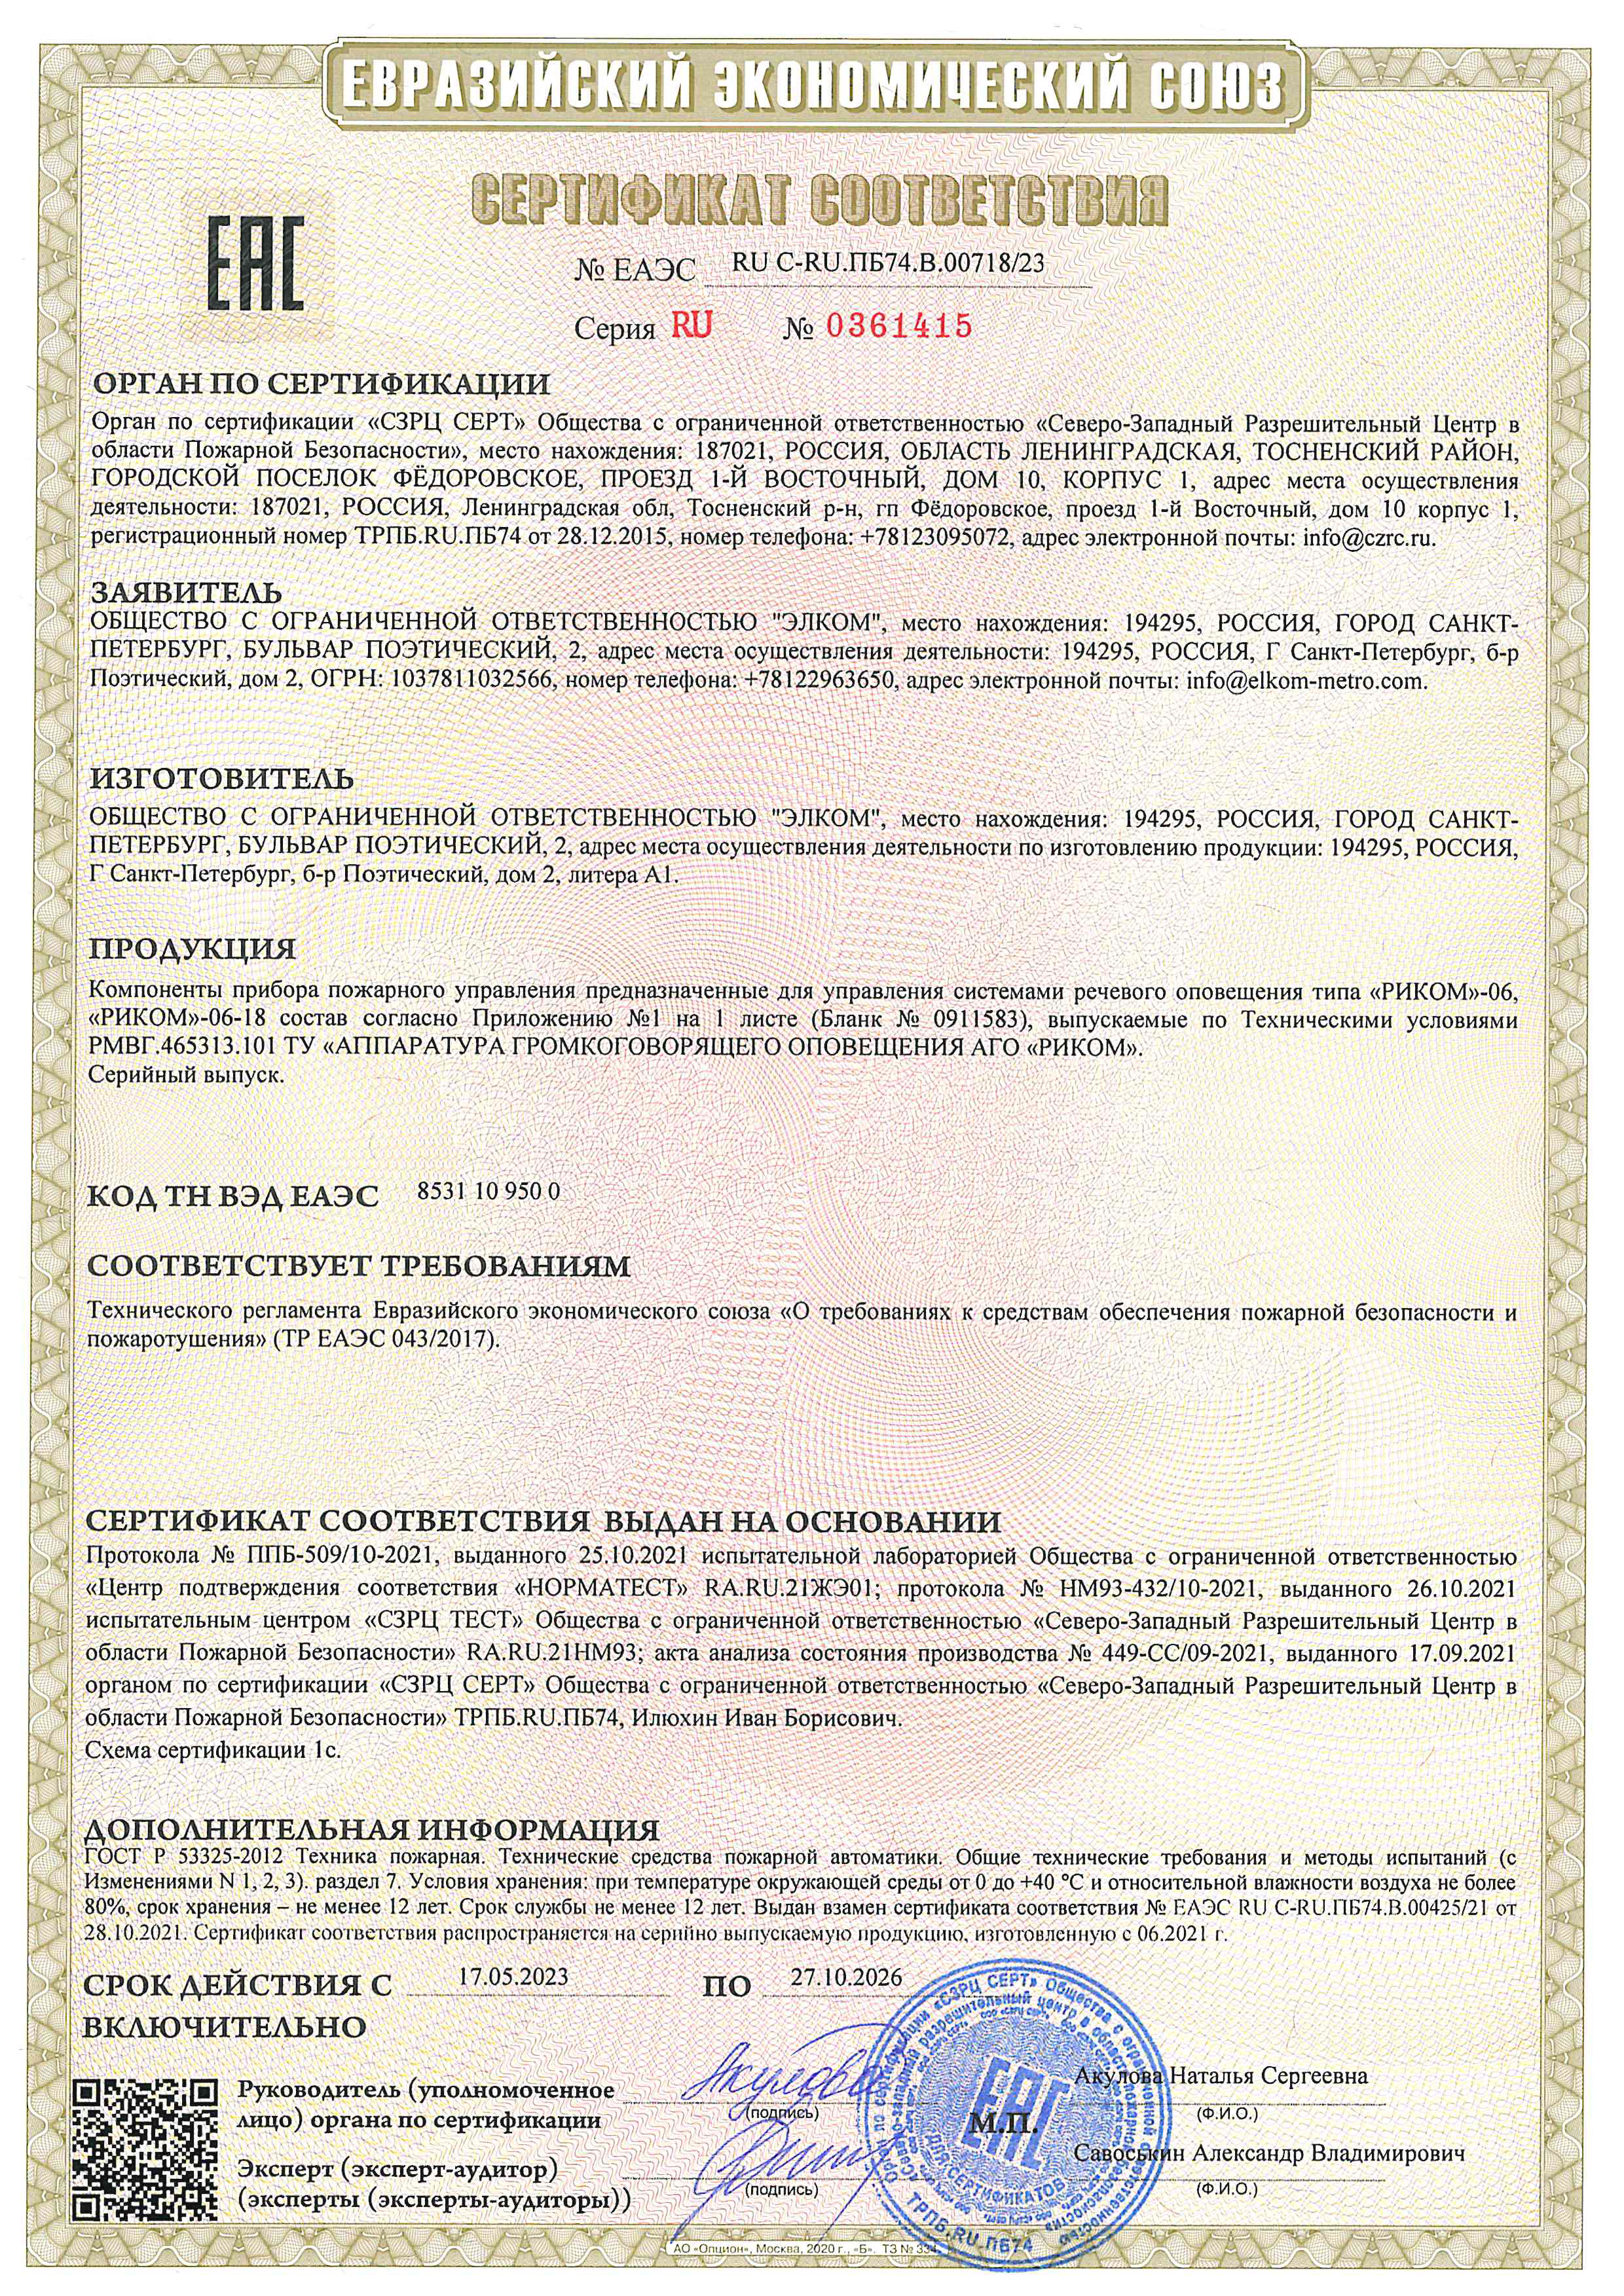 Сертификат по пожарной безопасности АГО «РИКОМ»-06, «РИКОМ»-06-18